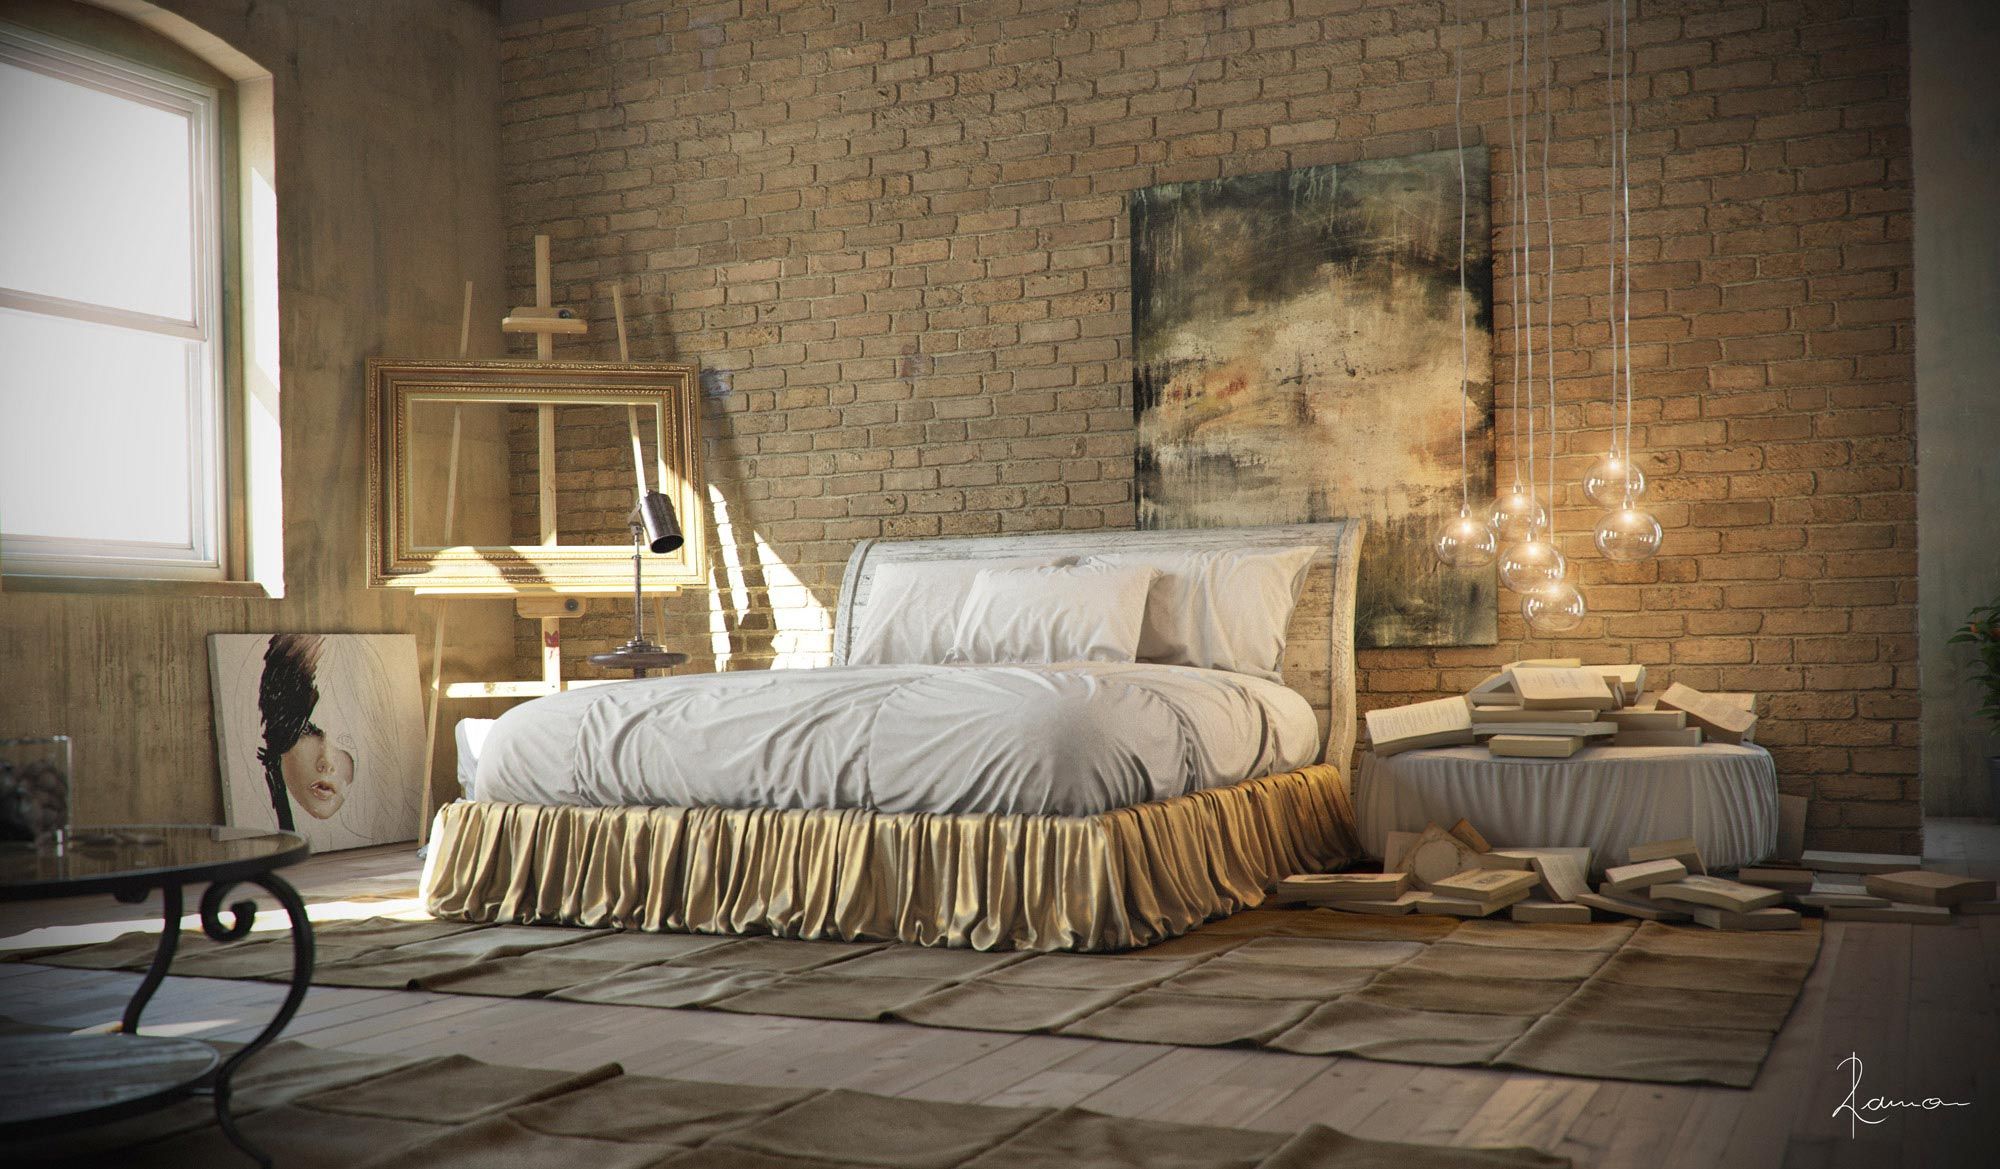 21 Industrial Bedroom Designs Decoholic